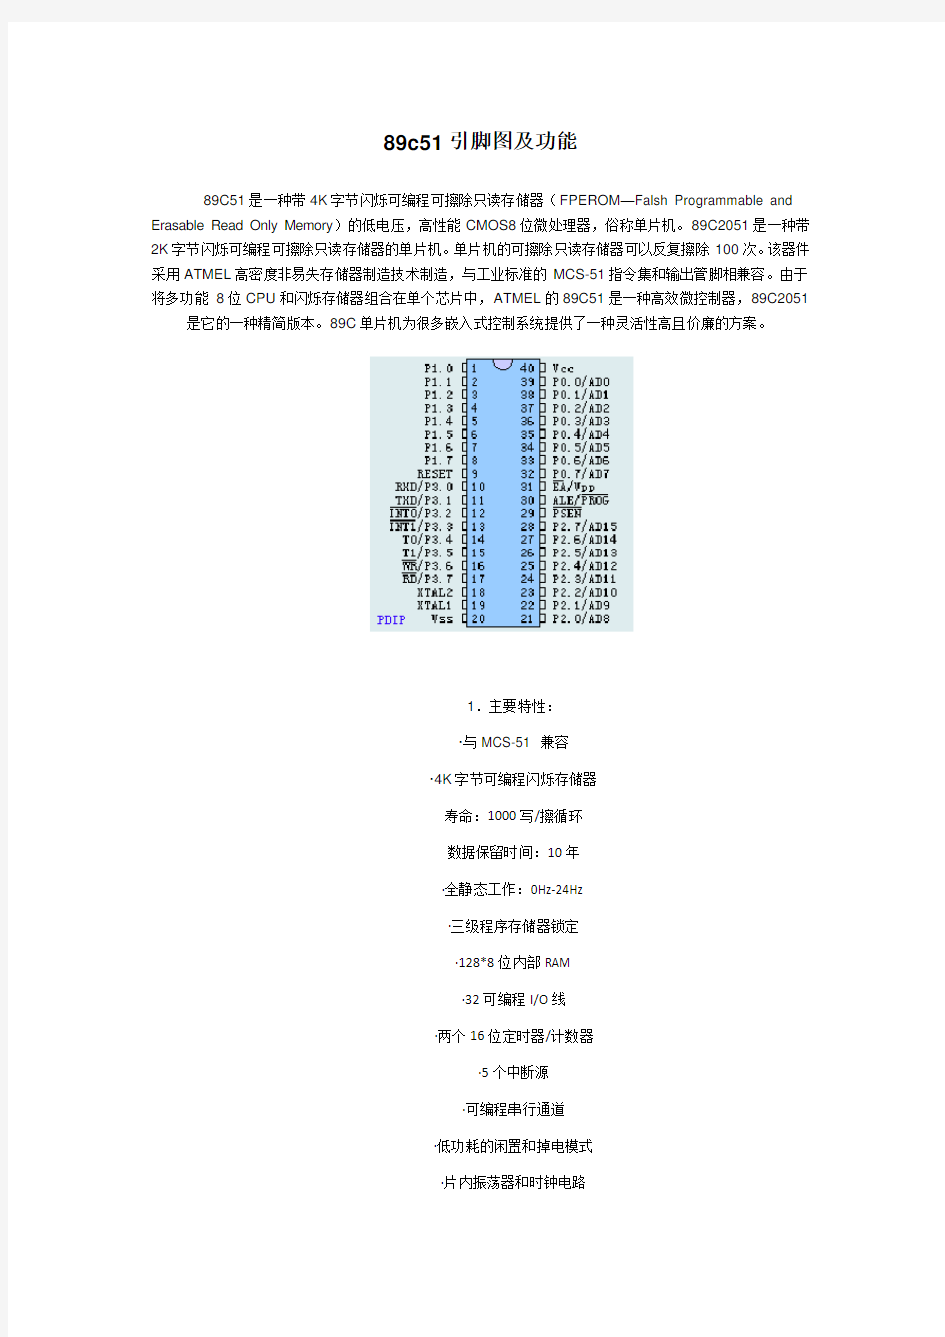 89c51引脚图及功能中文资料